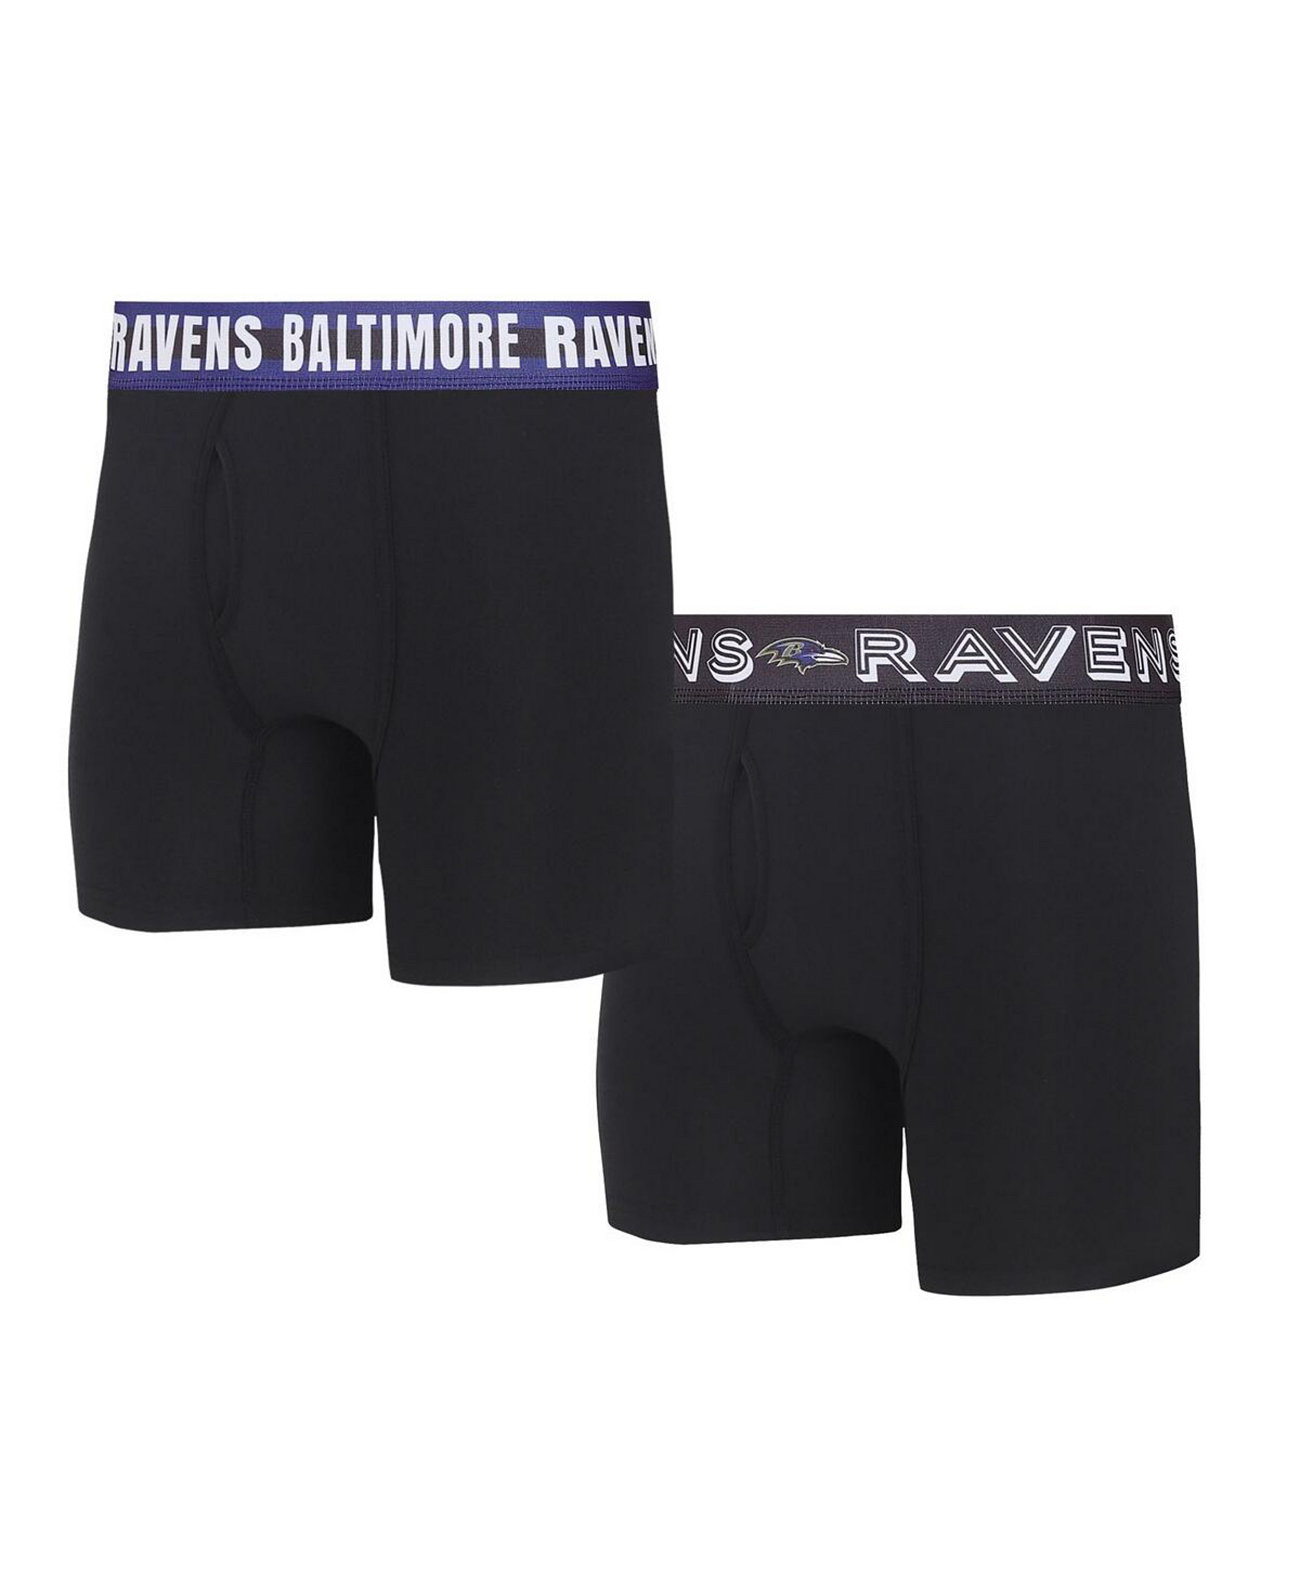 Набор из двух мужских трикотажных трусов-боксеров Baltimore Ravens Gauge Concepts Sport